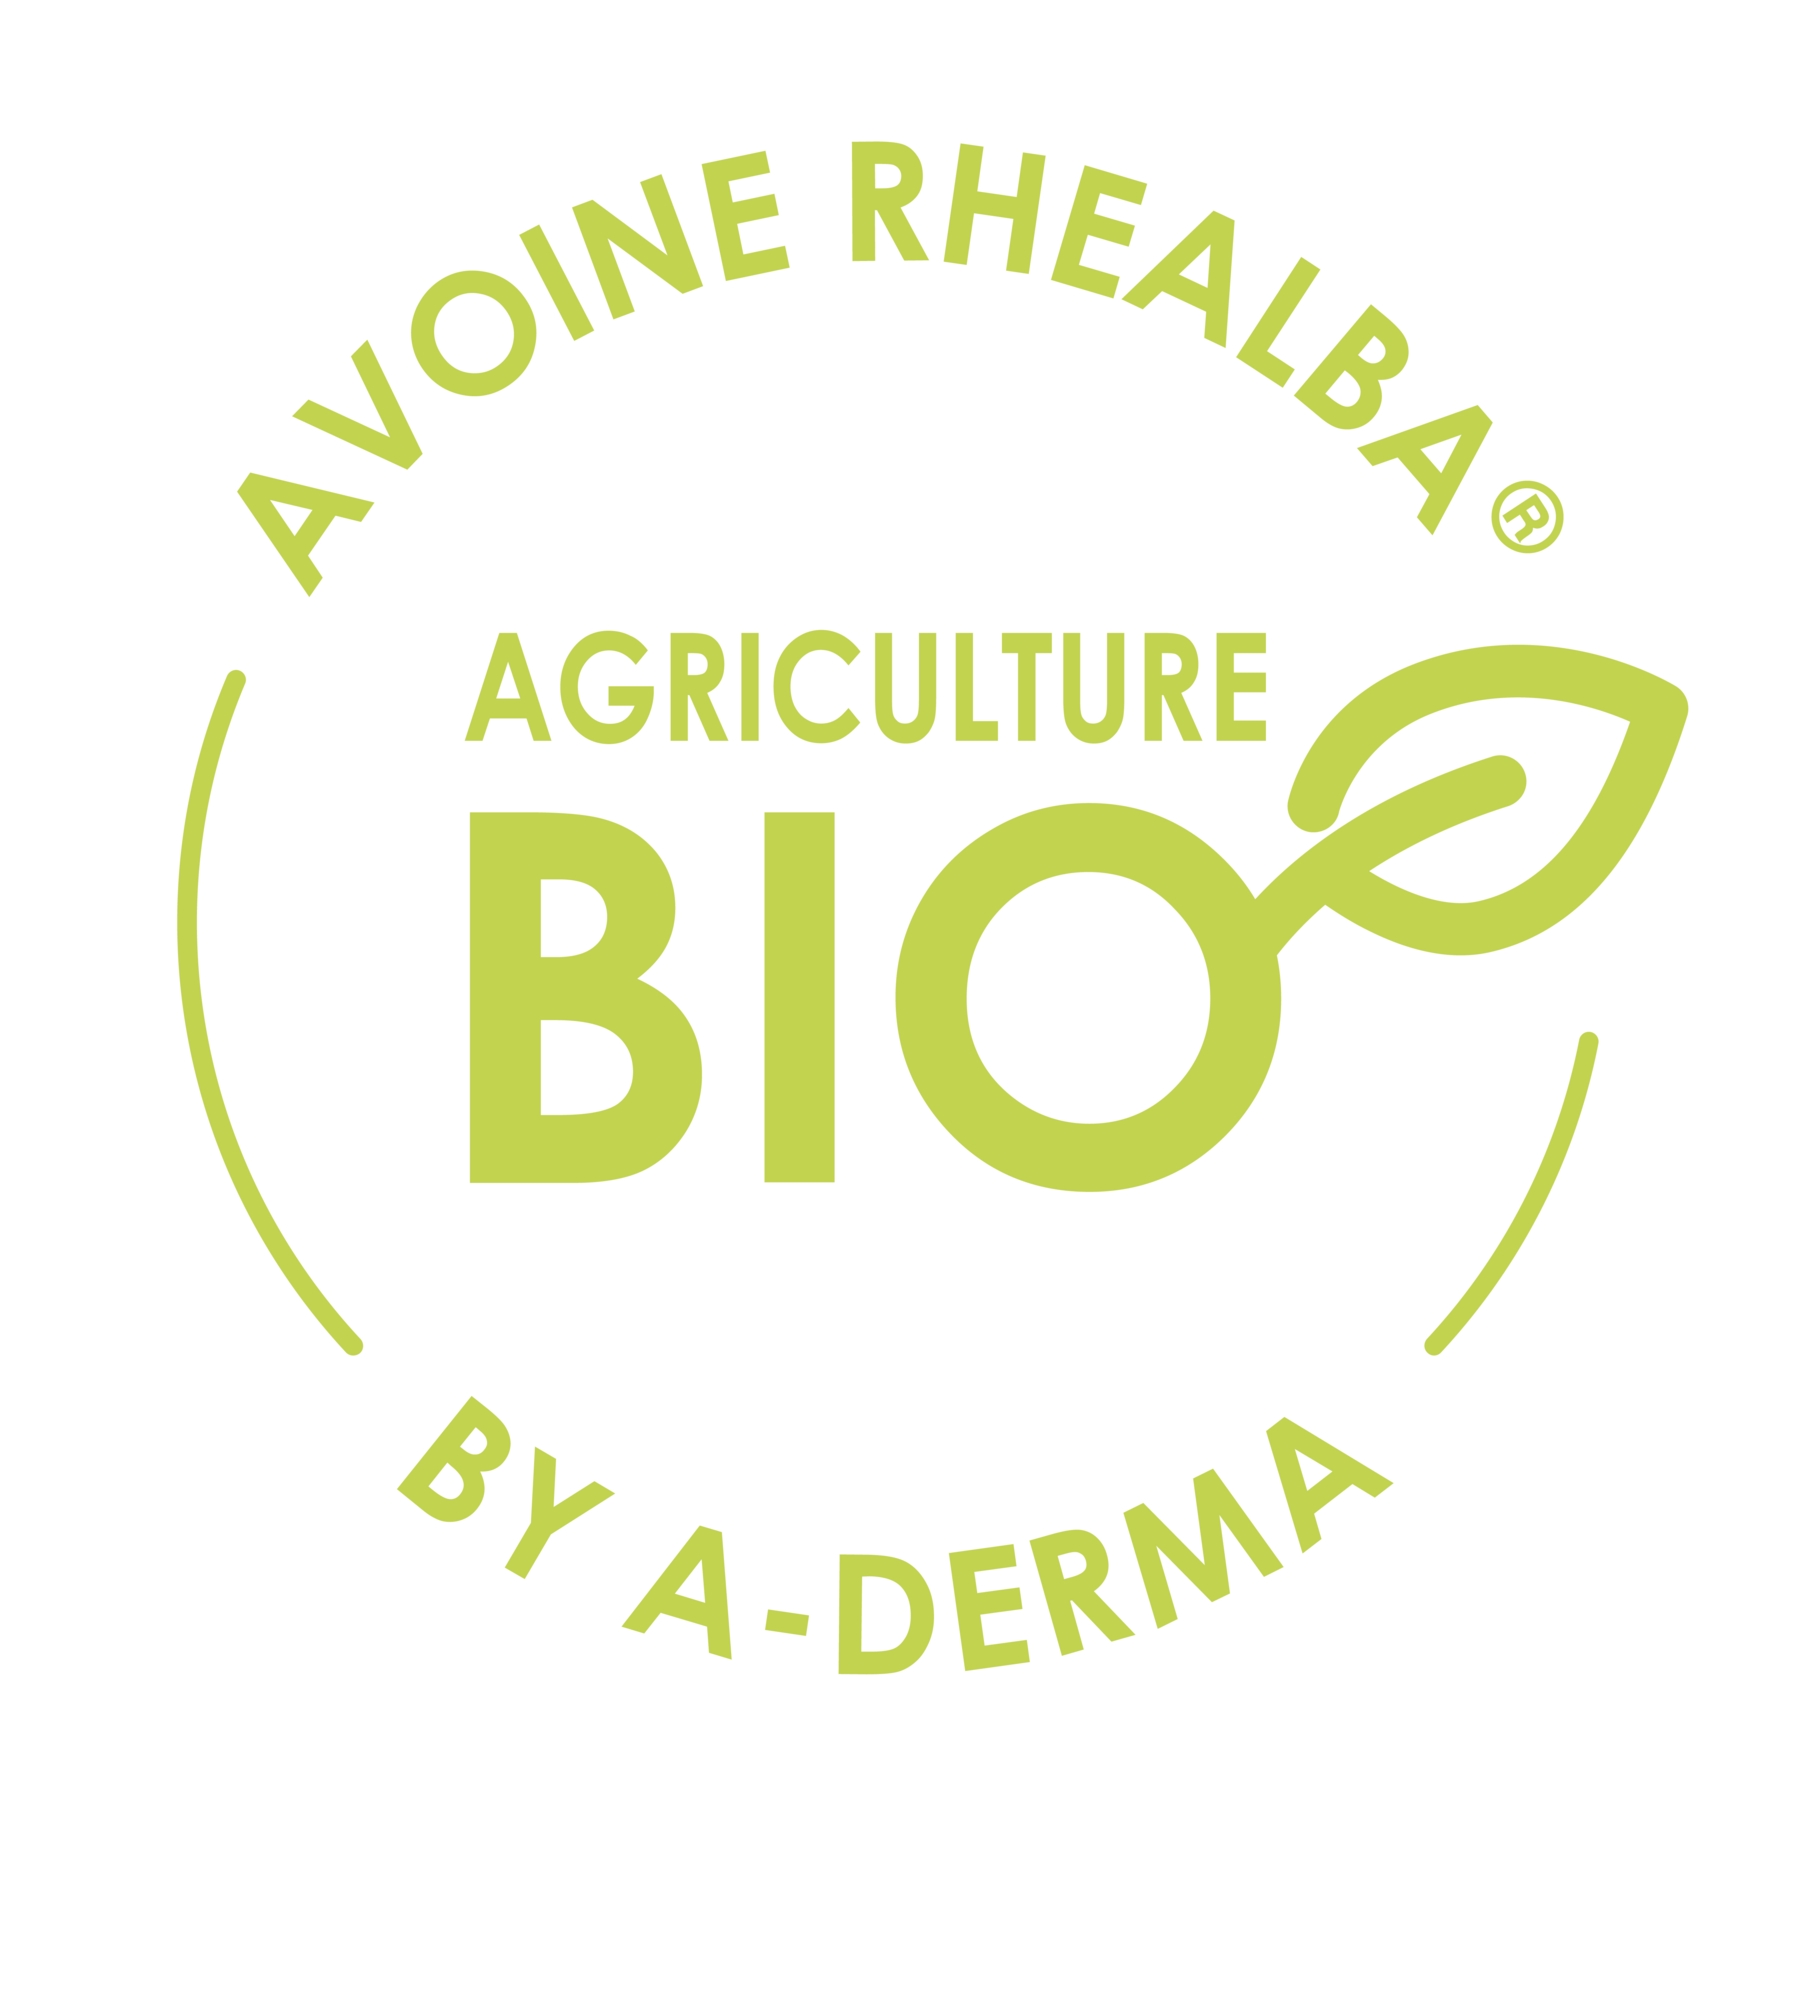 Βρώμη Rhealba® από βιολογική καλλιέργεια.